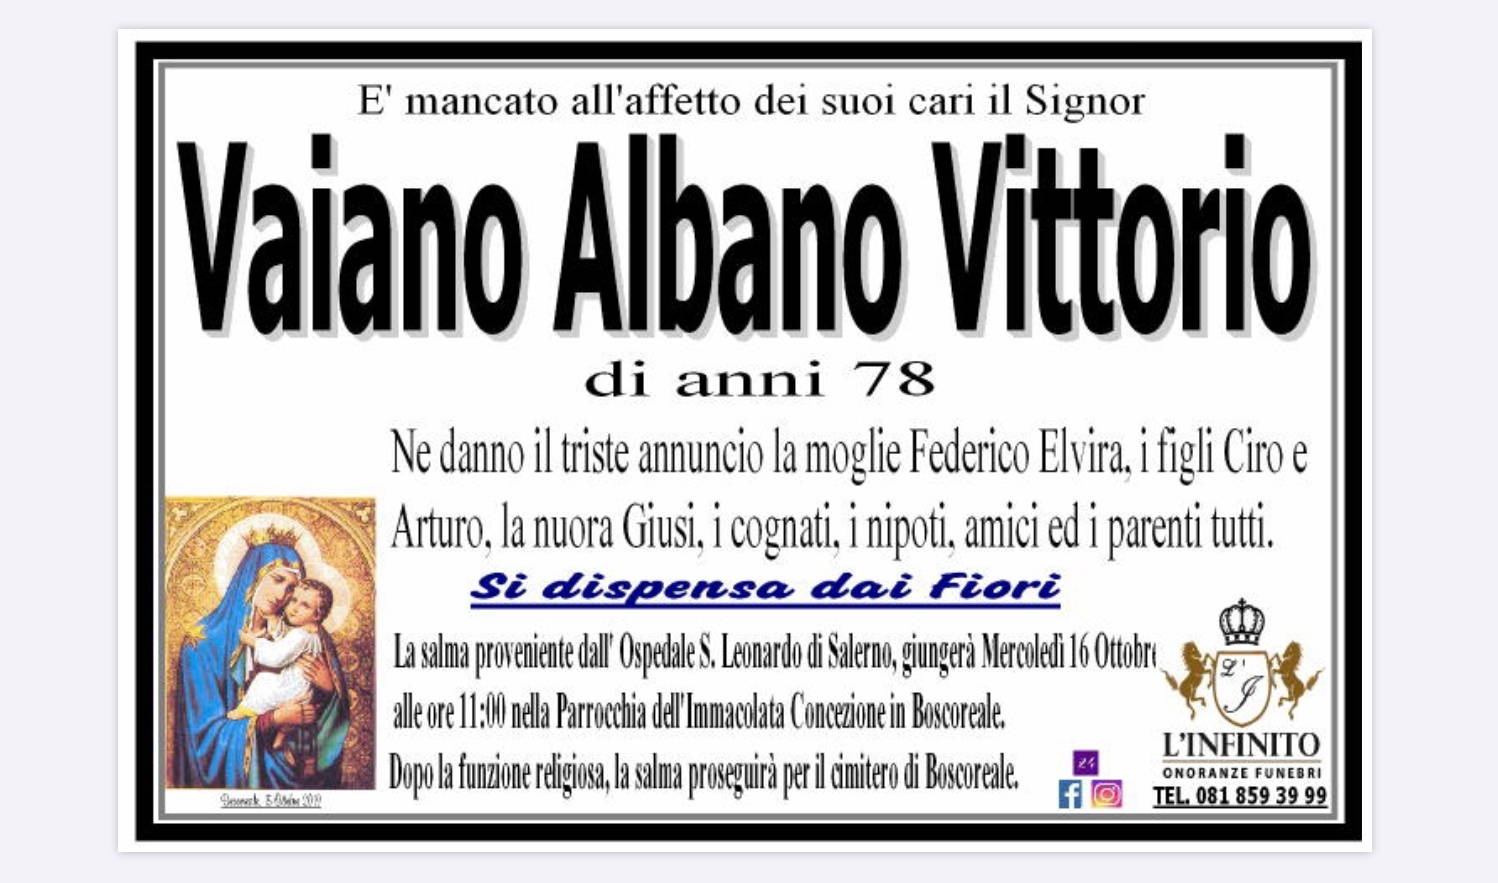 Vittorio Vaiano Albano